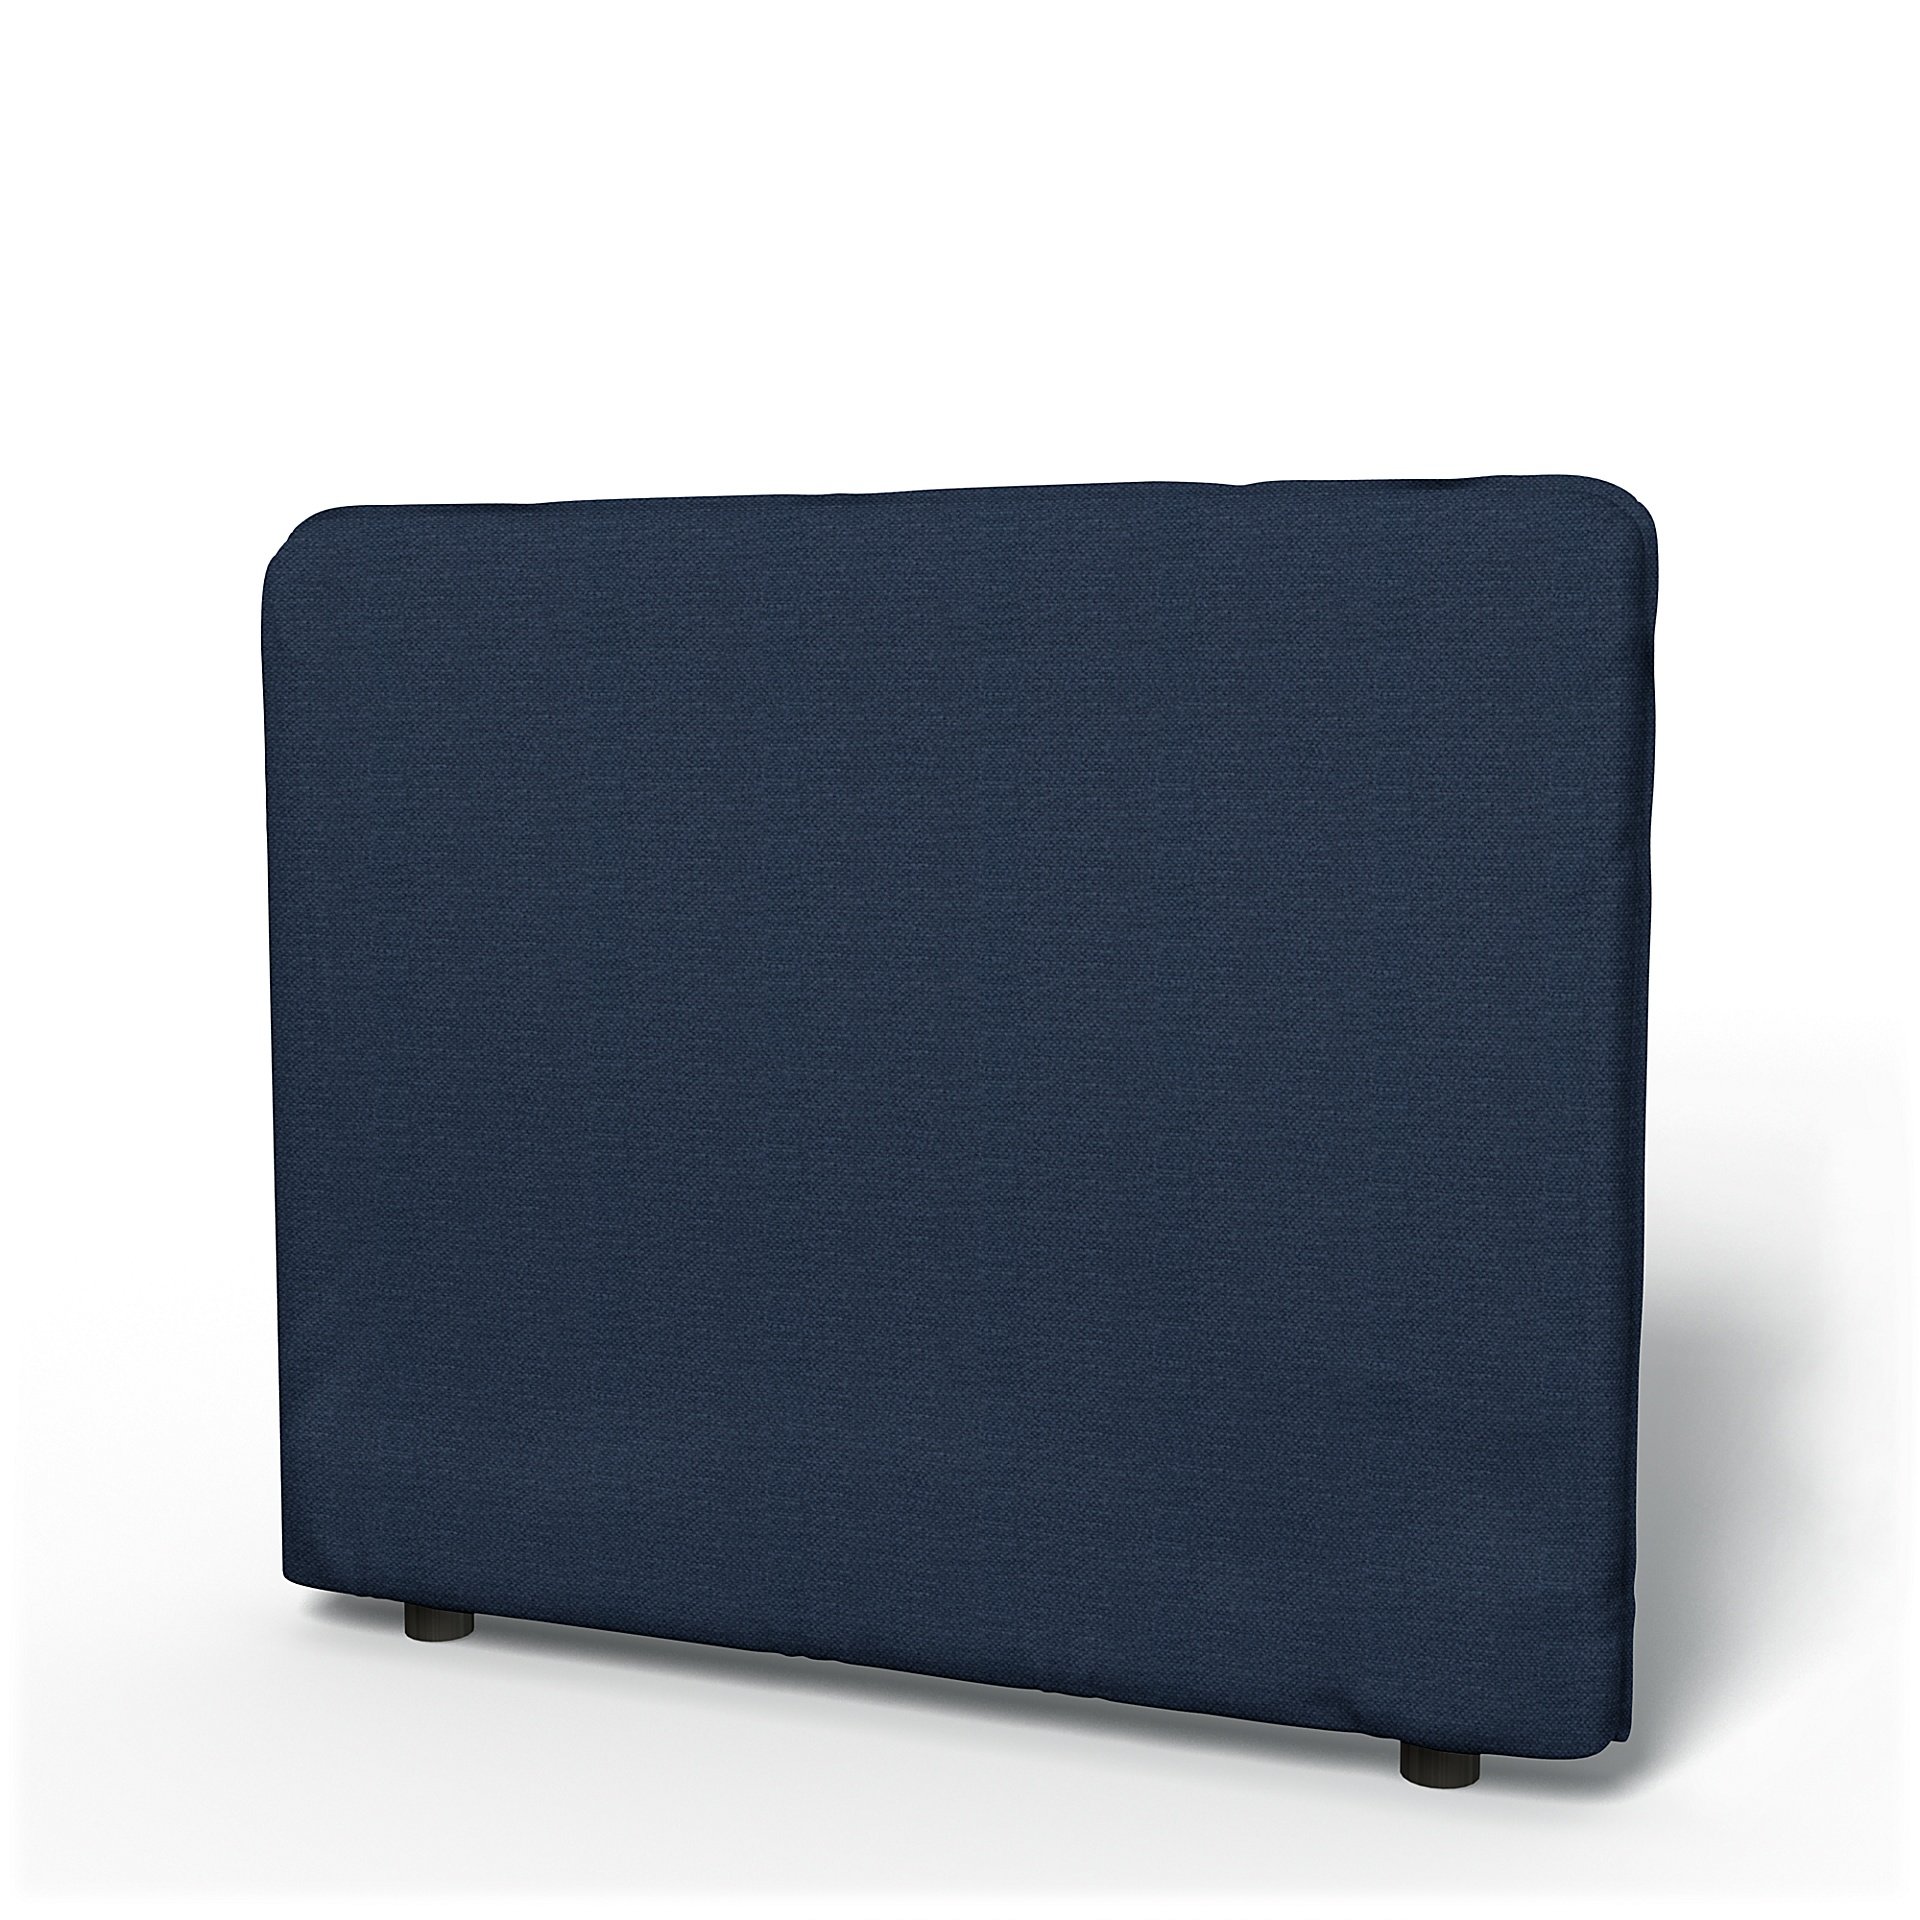 IKEA - Vallentuna Low Backrest Cover 100x80cm 39x32in, Navy Blue, Linen - Bemz